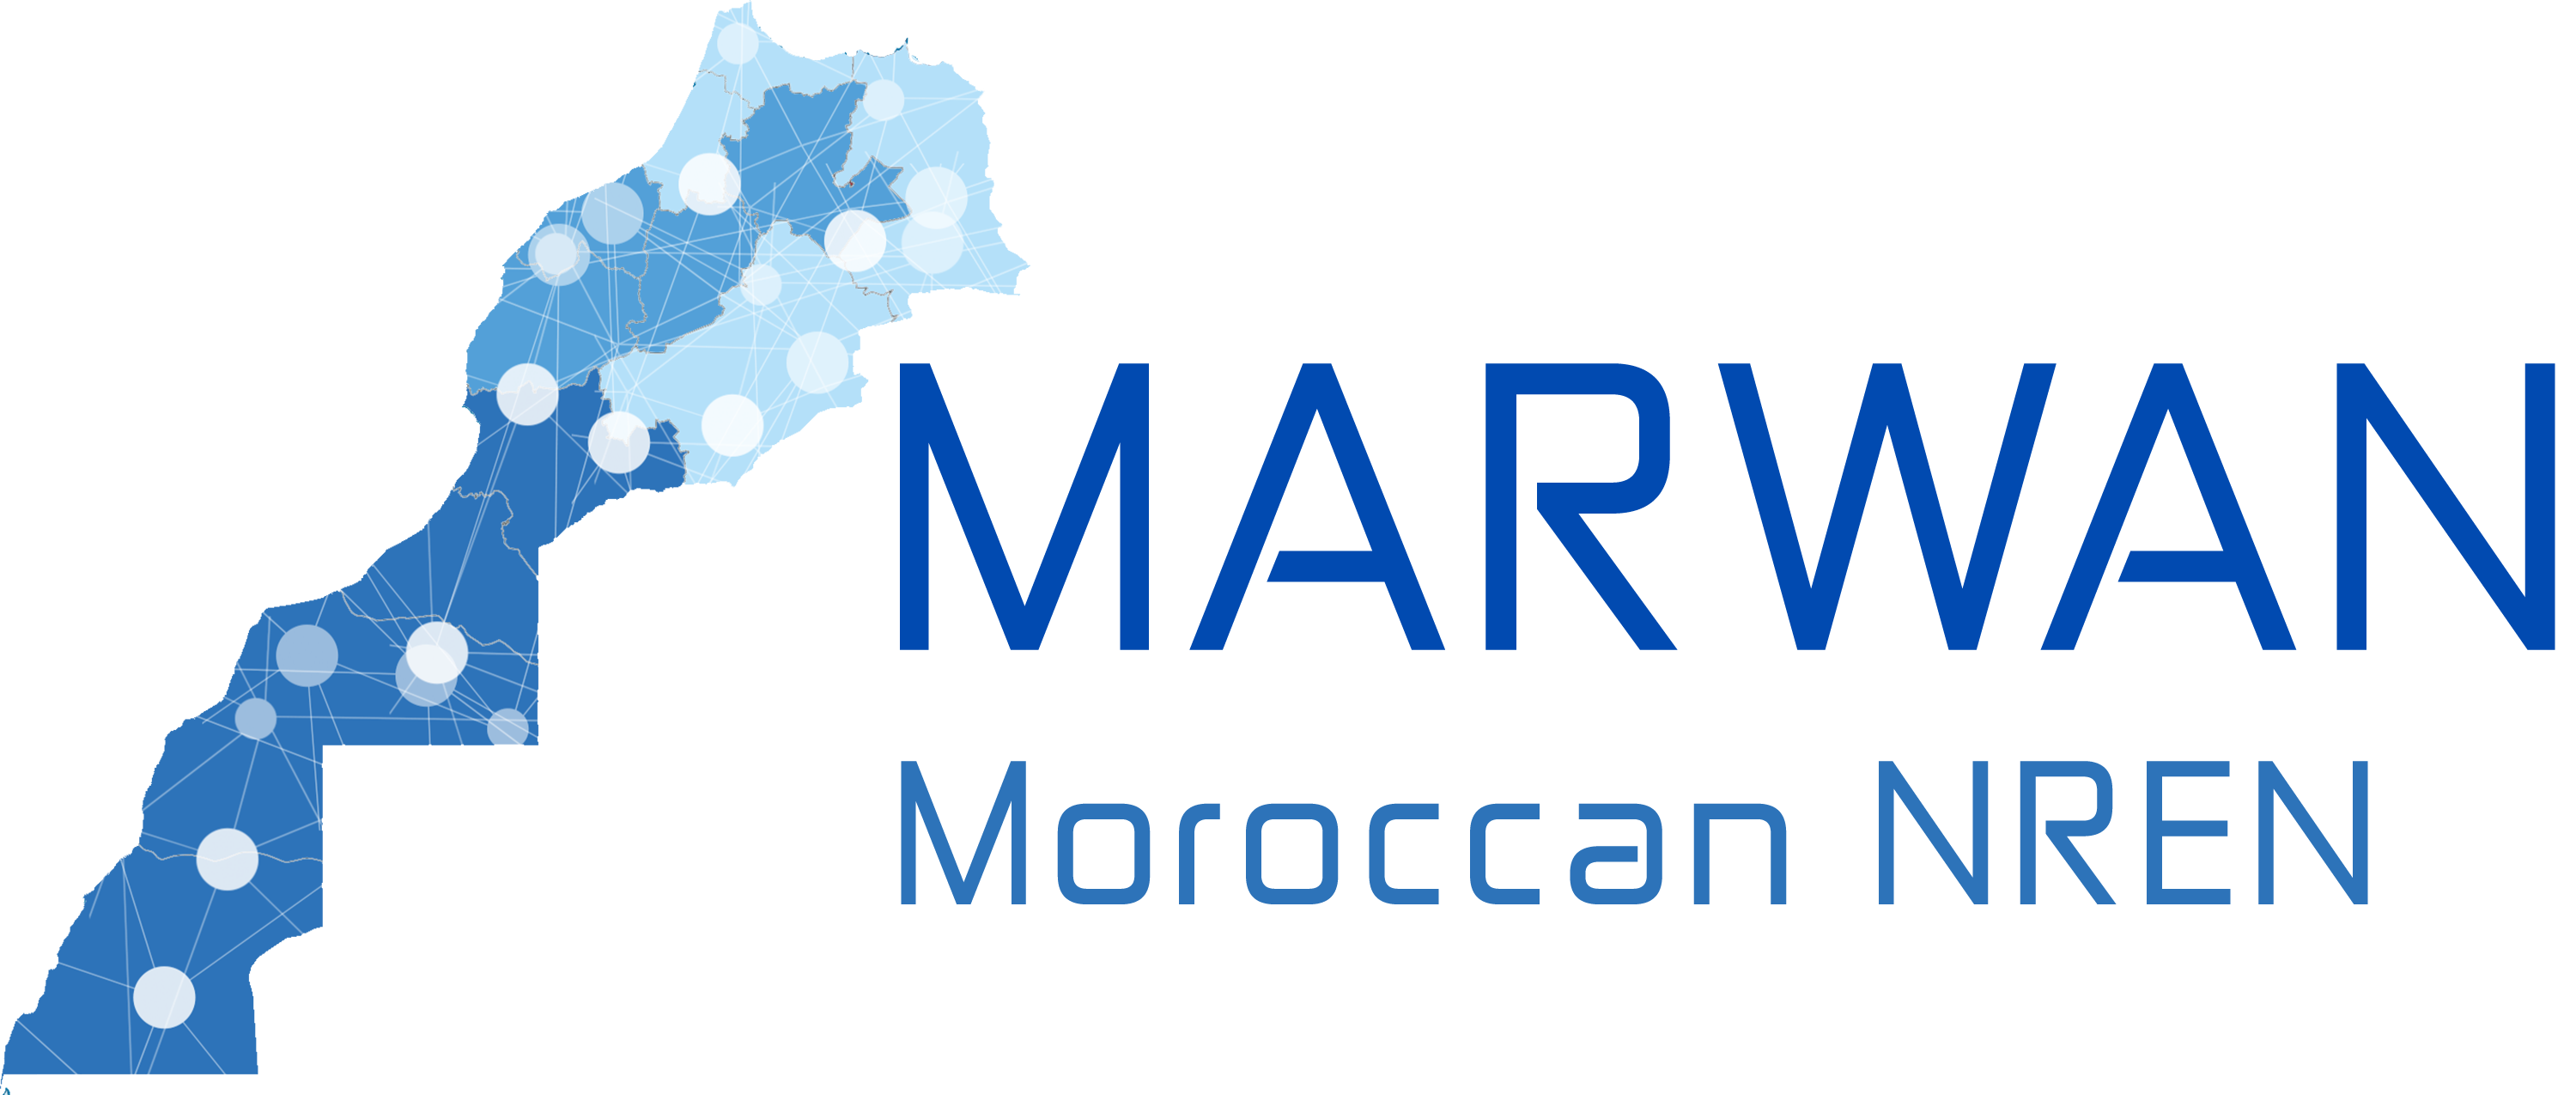 Morocco Logo